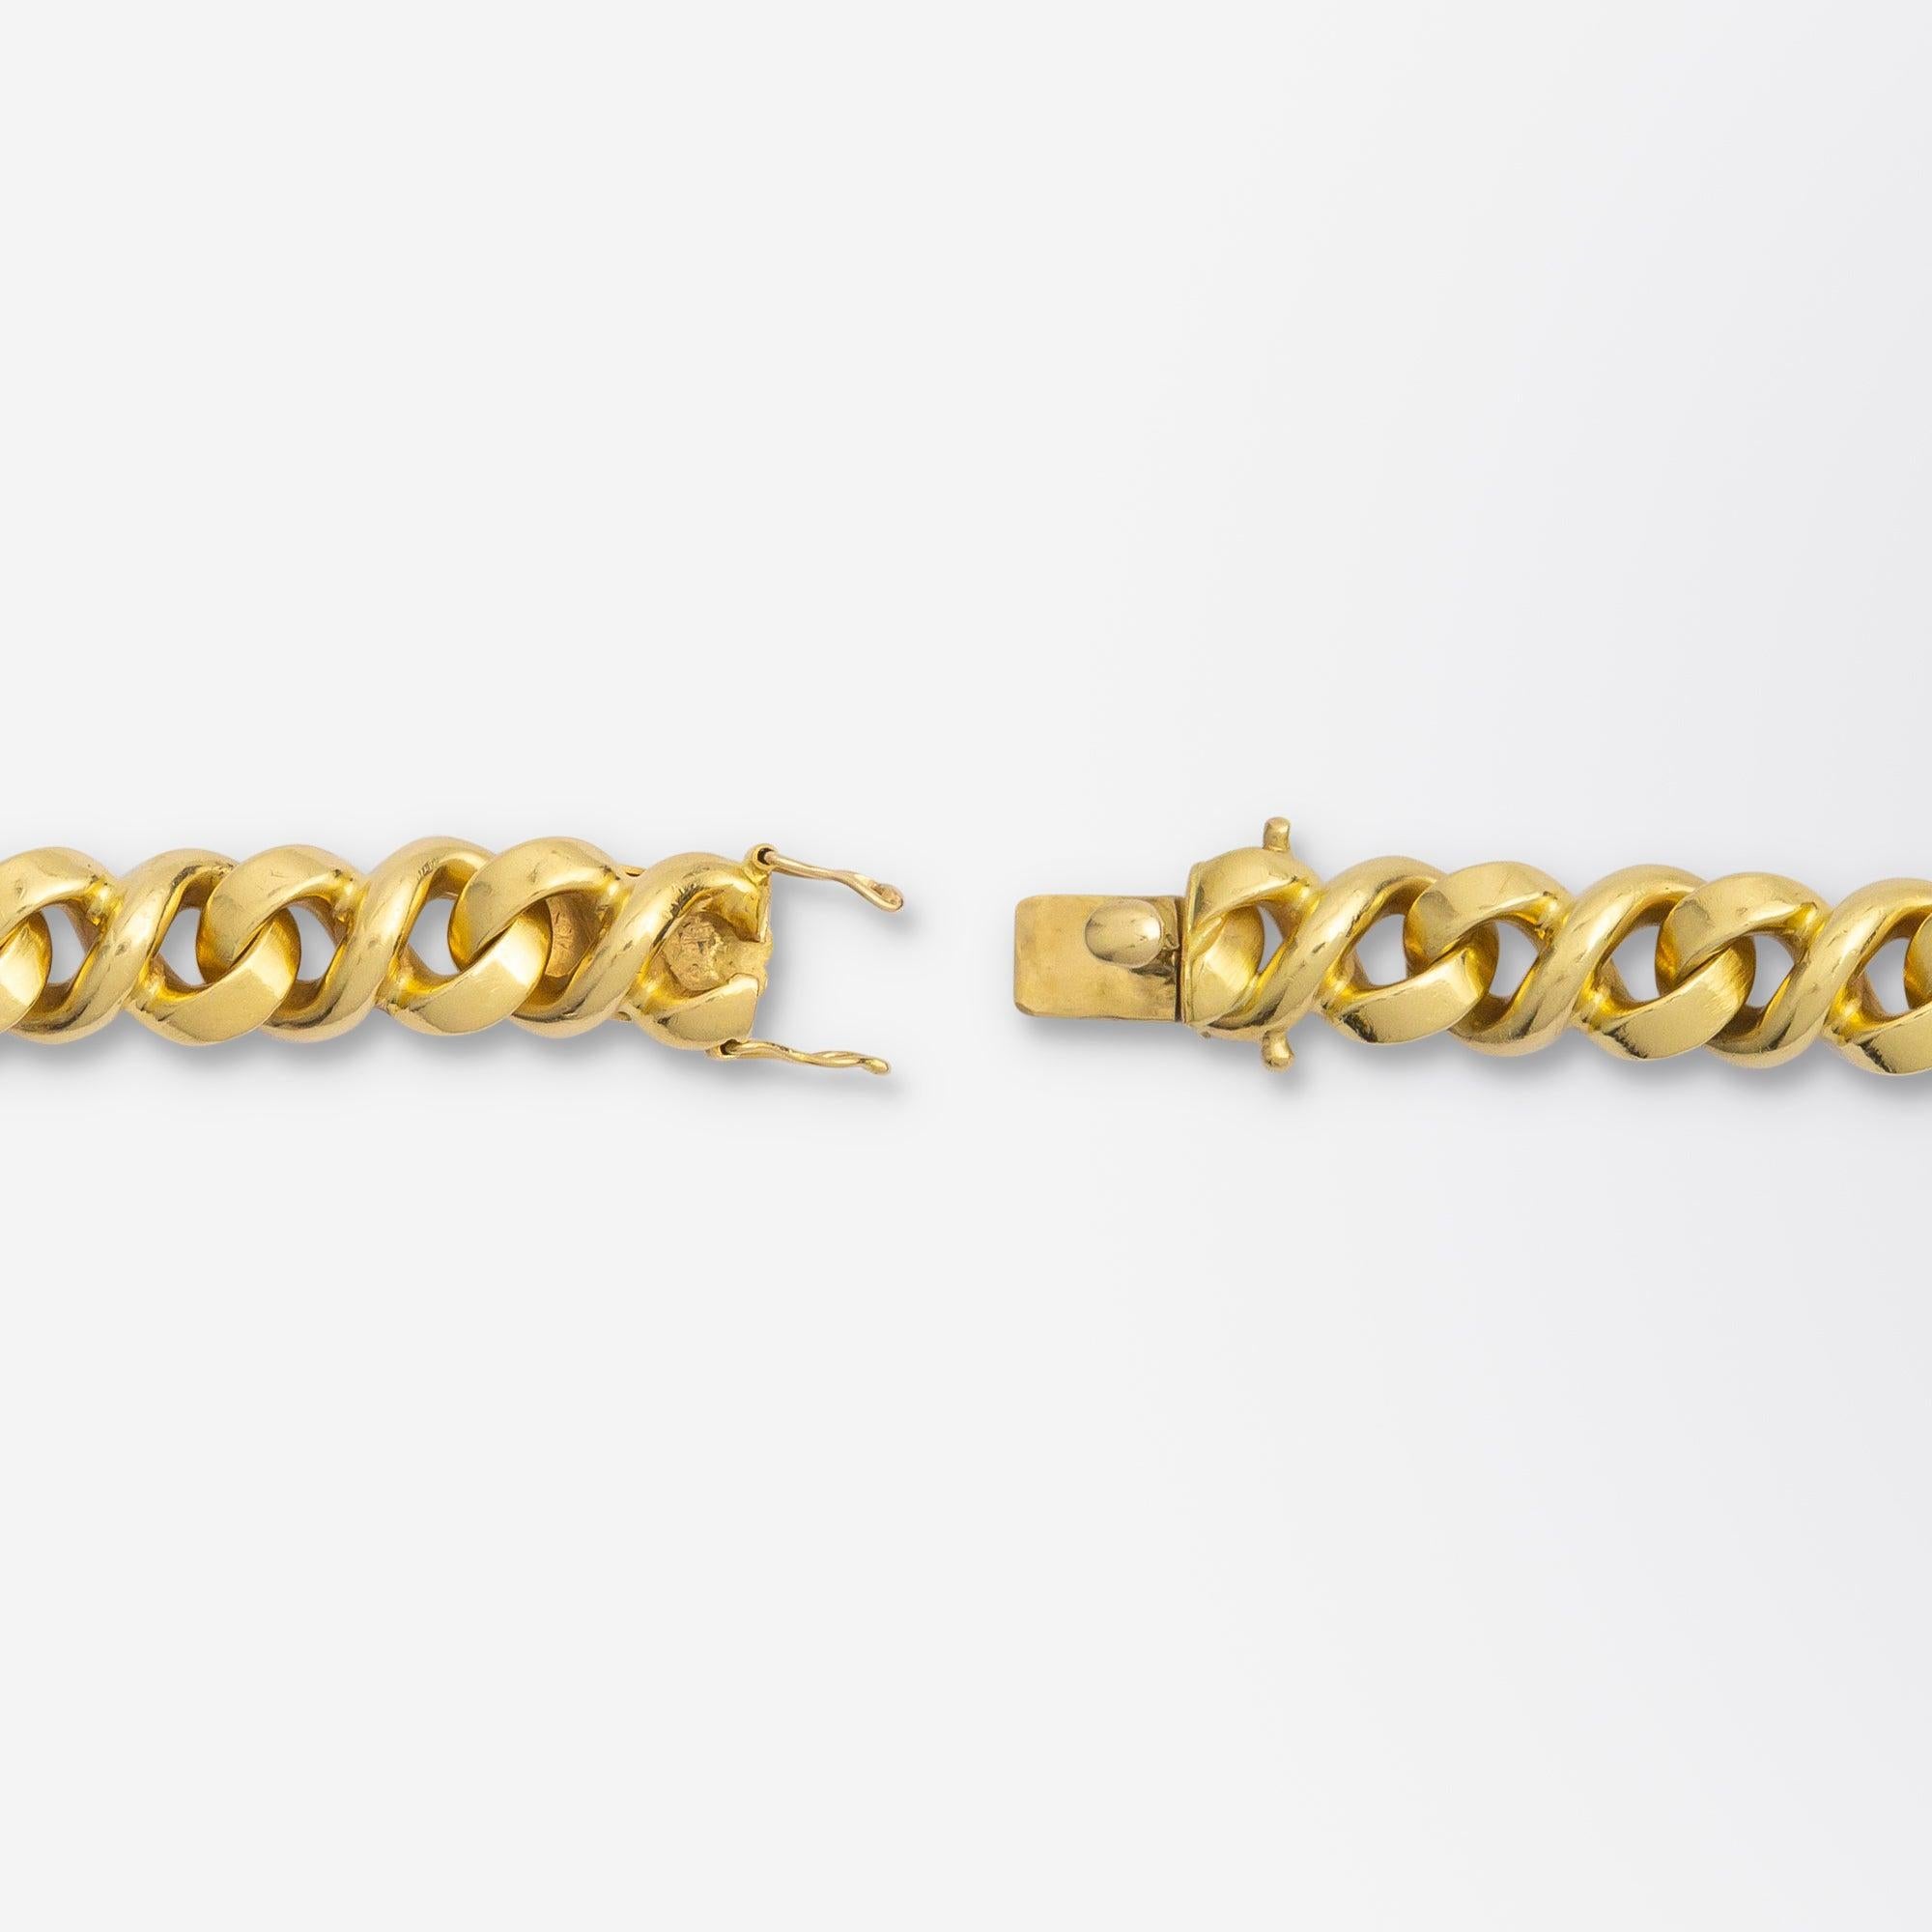 Modern 18 Karat Gold, 'Figure of 8' Bracelet by Garrard of London